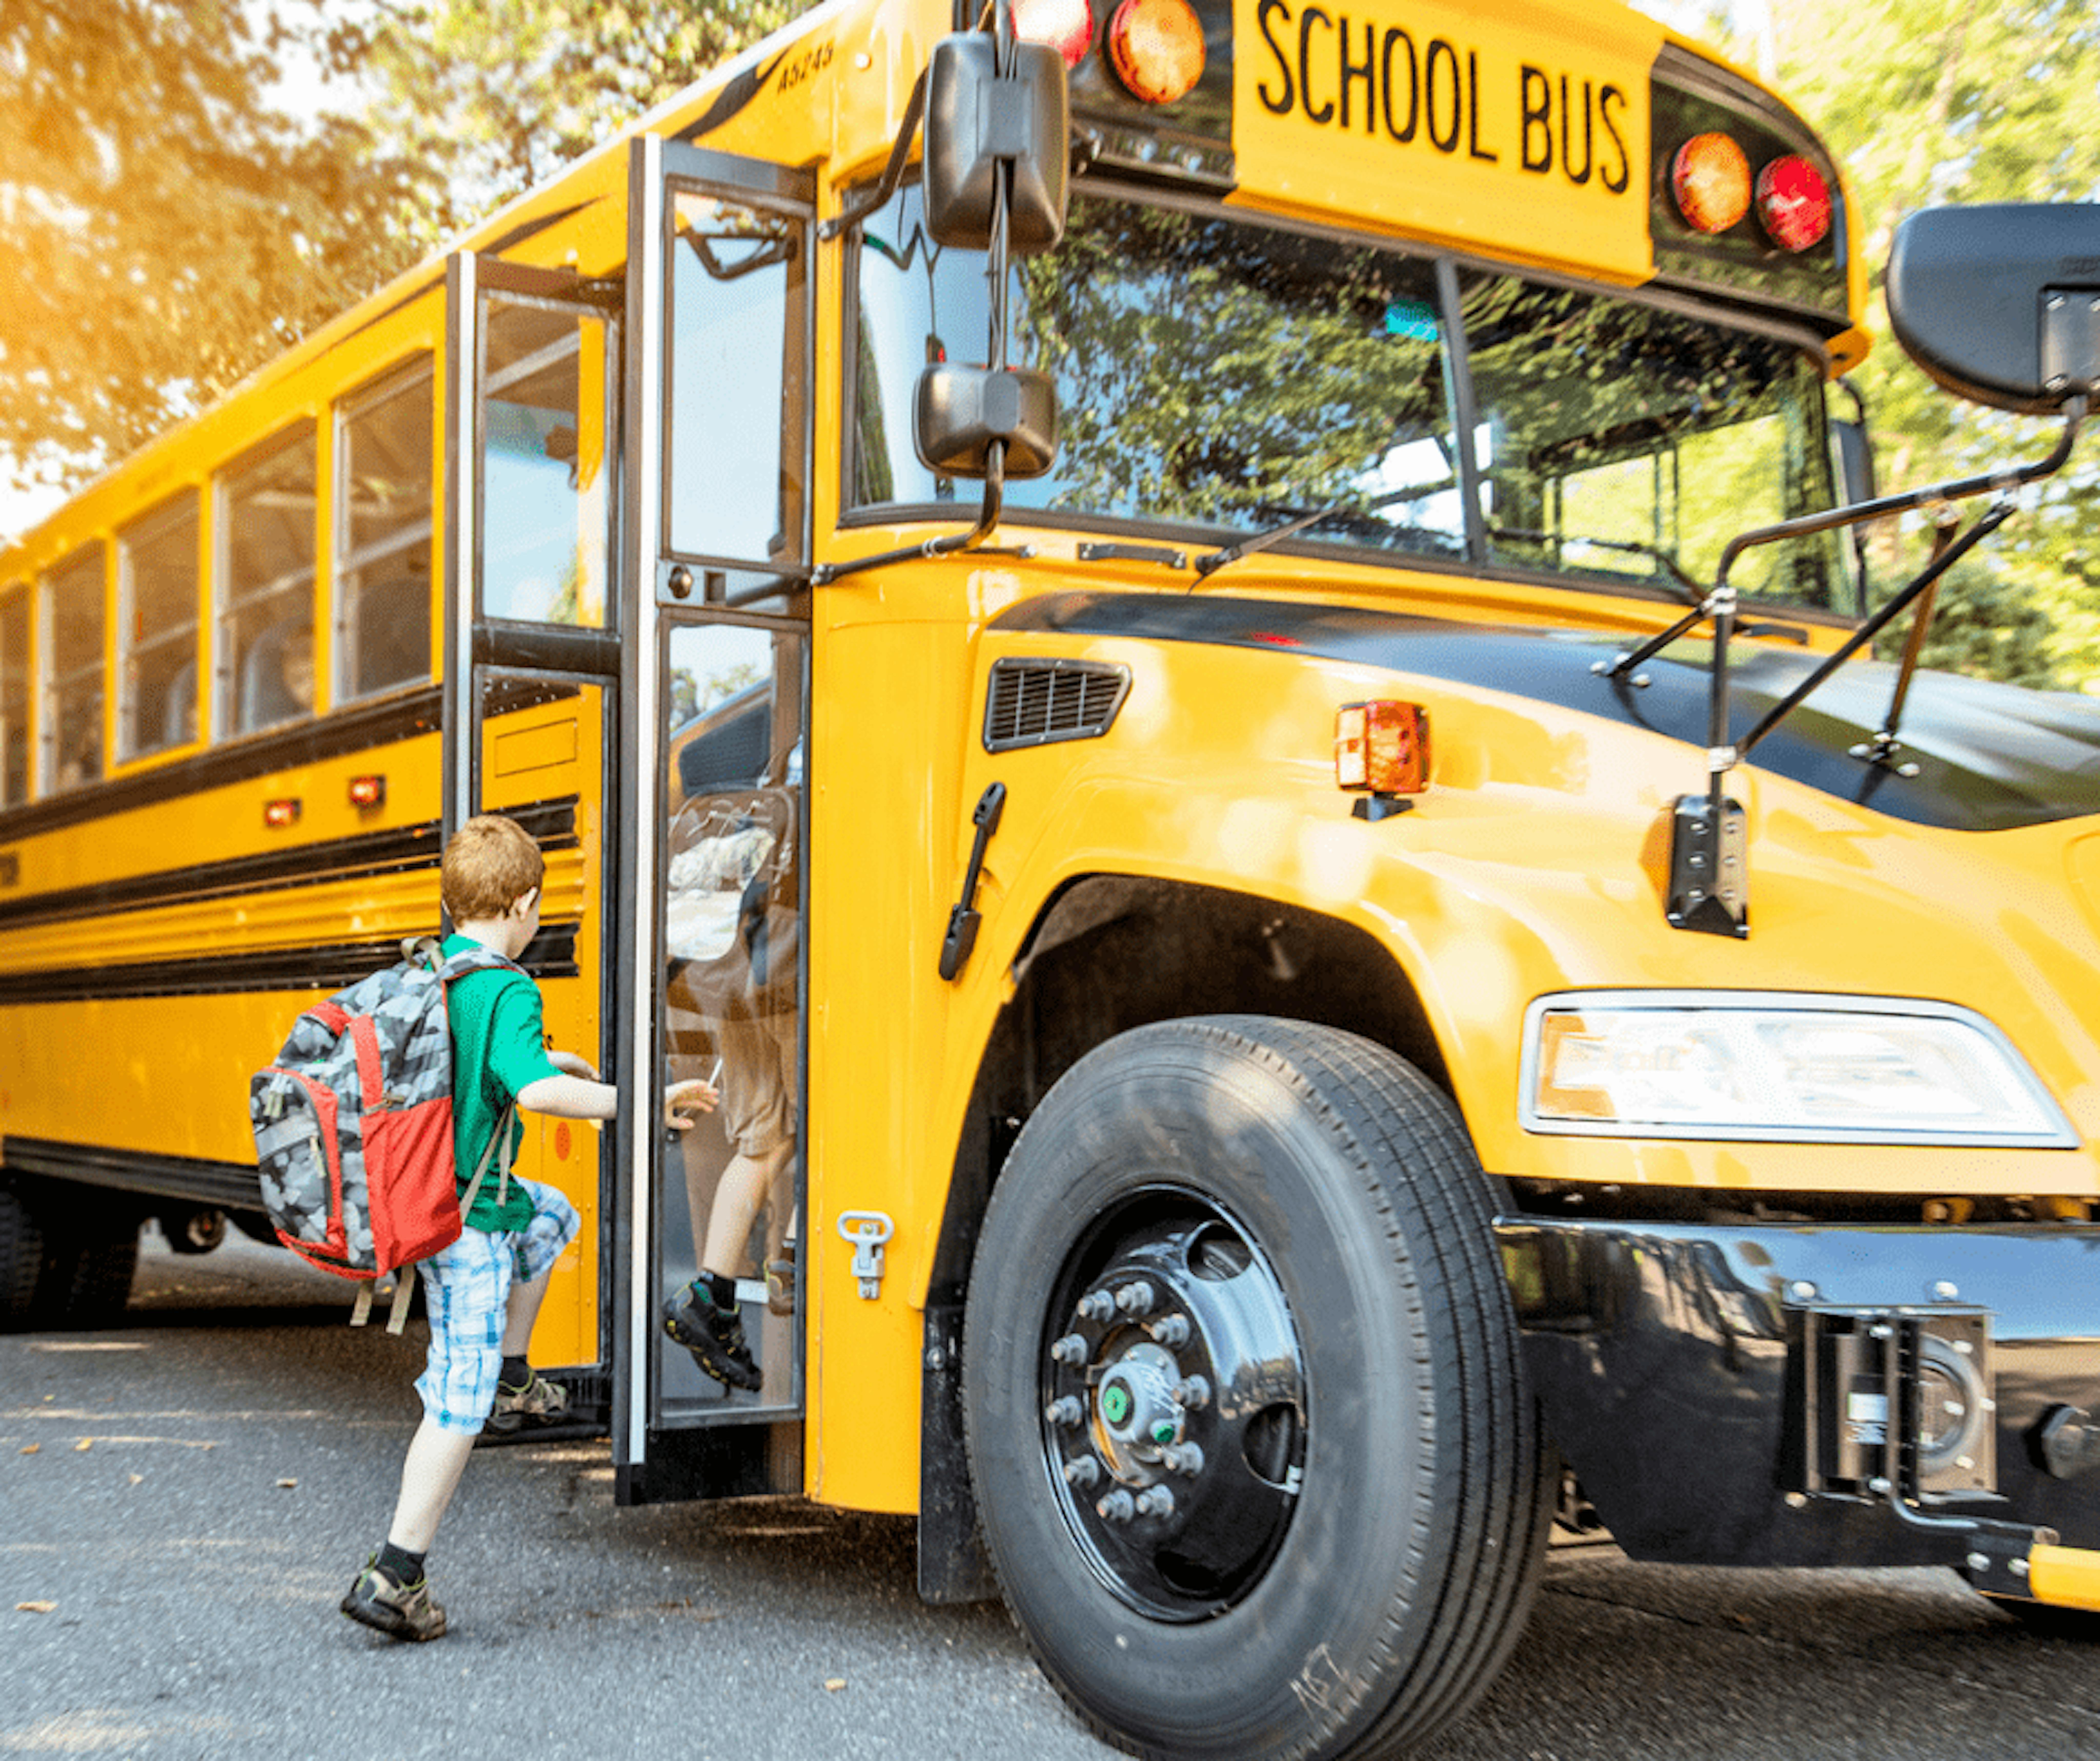 Kid boarding school bus